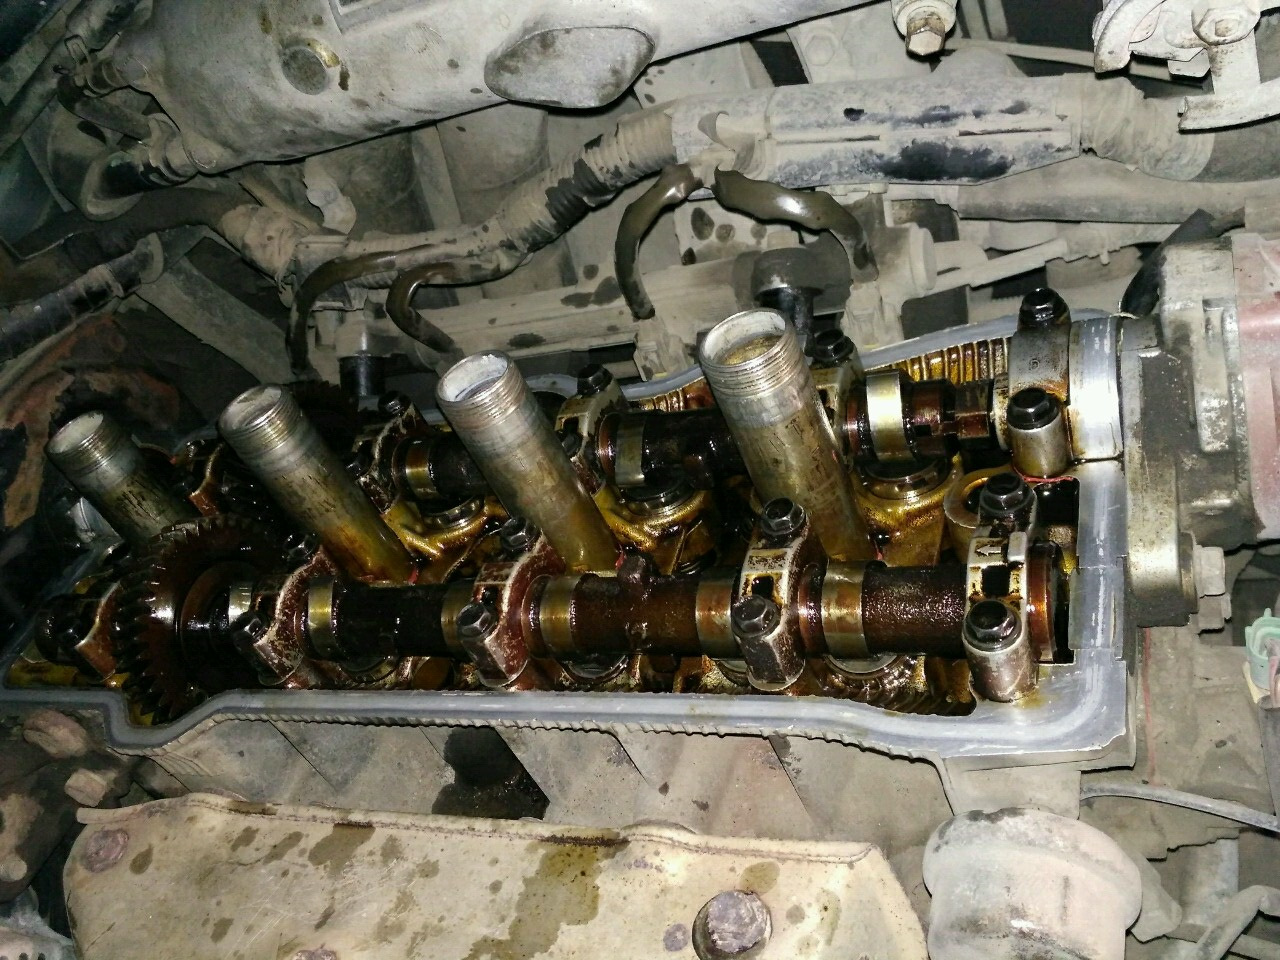 Регулировка клапанов 3s fe. 3sfe Toyota клапана. Шайбы регулировочные клапанов Тойота 3s-Fe. Двигатель 3s-Fe клапан. Двигатель 3s-Fe регулировка клапанов.